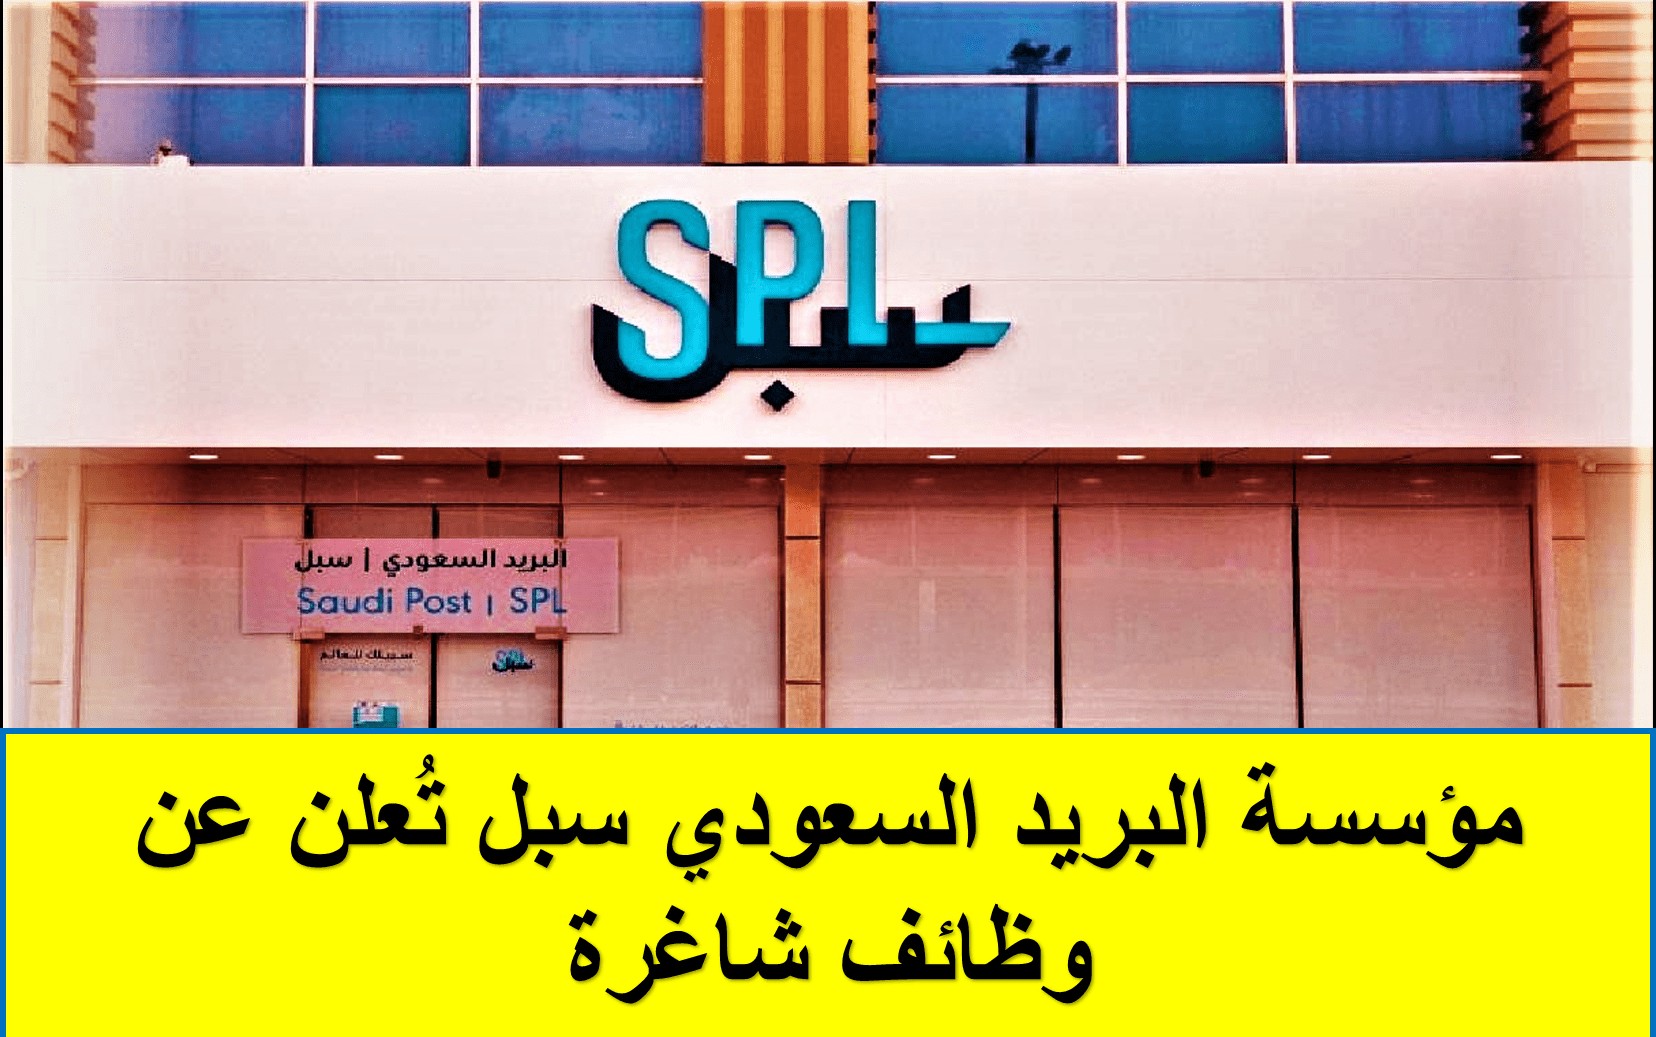 برواتب عالية .. إلحق التقديم لأقوى وظائف مؤسسة البريد السعودي سبل لمختلف التخصصات والمؤهلات